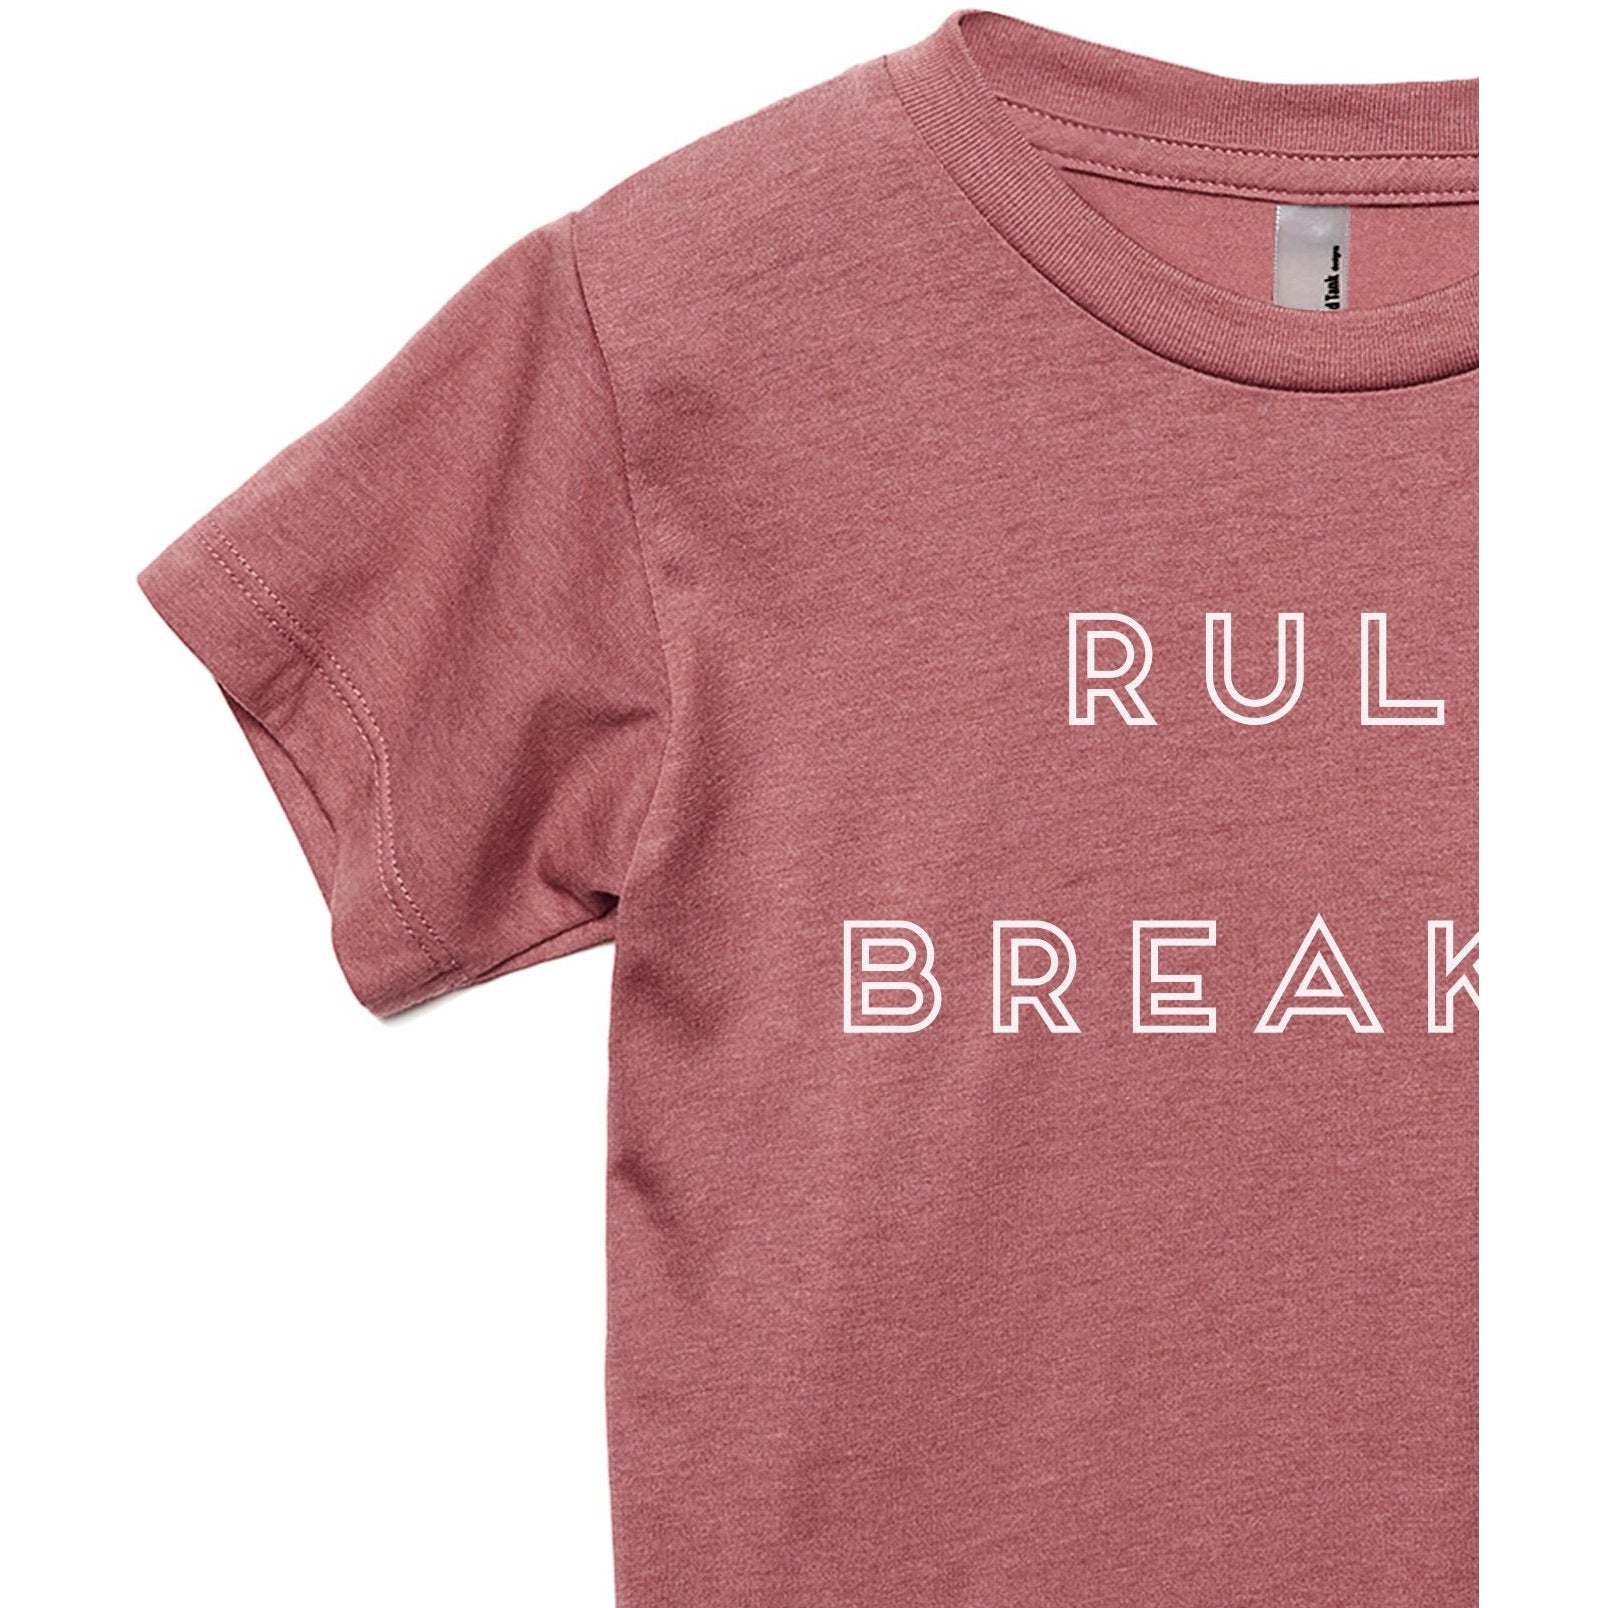 Rule Breaker - Stories You Can Wear